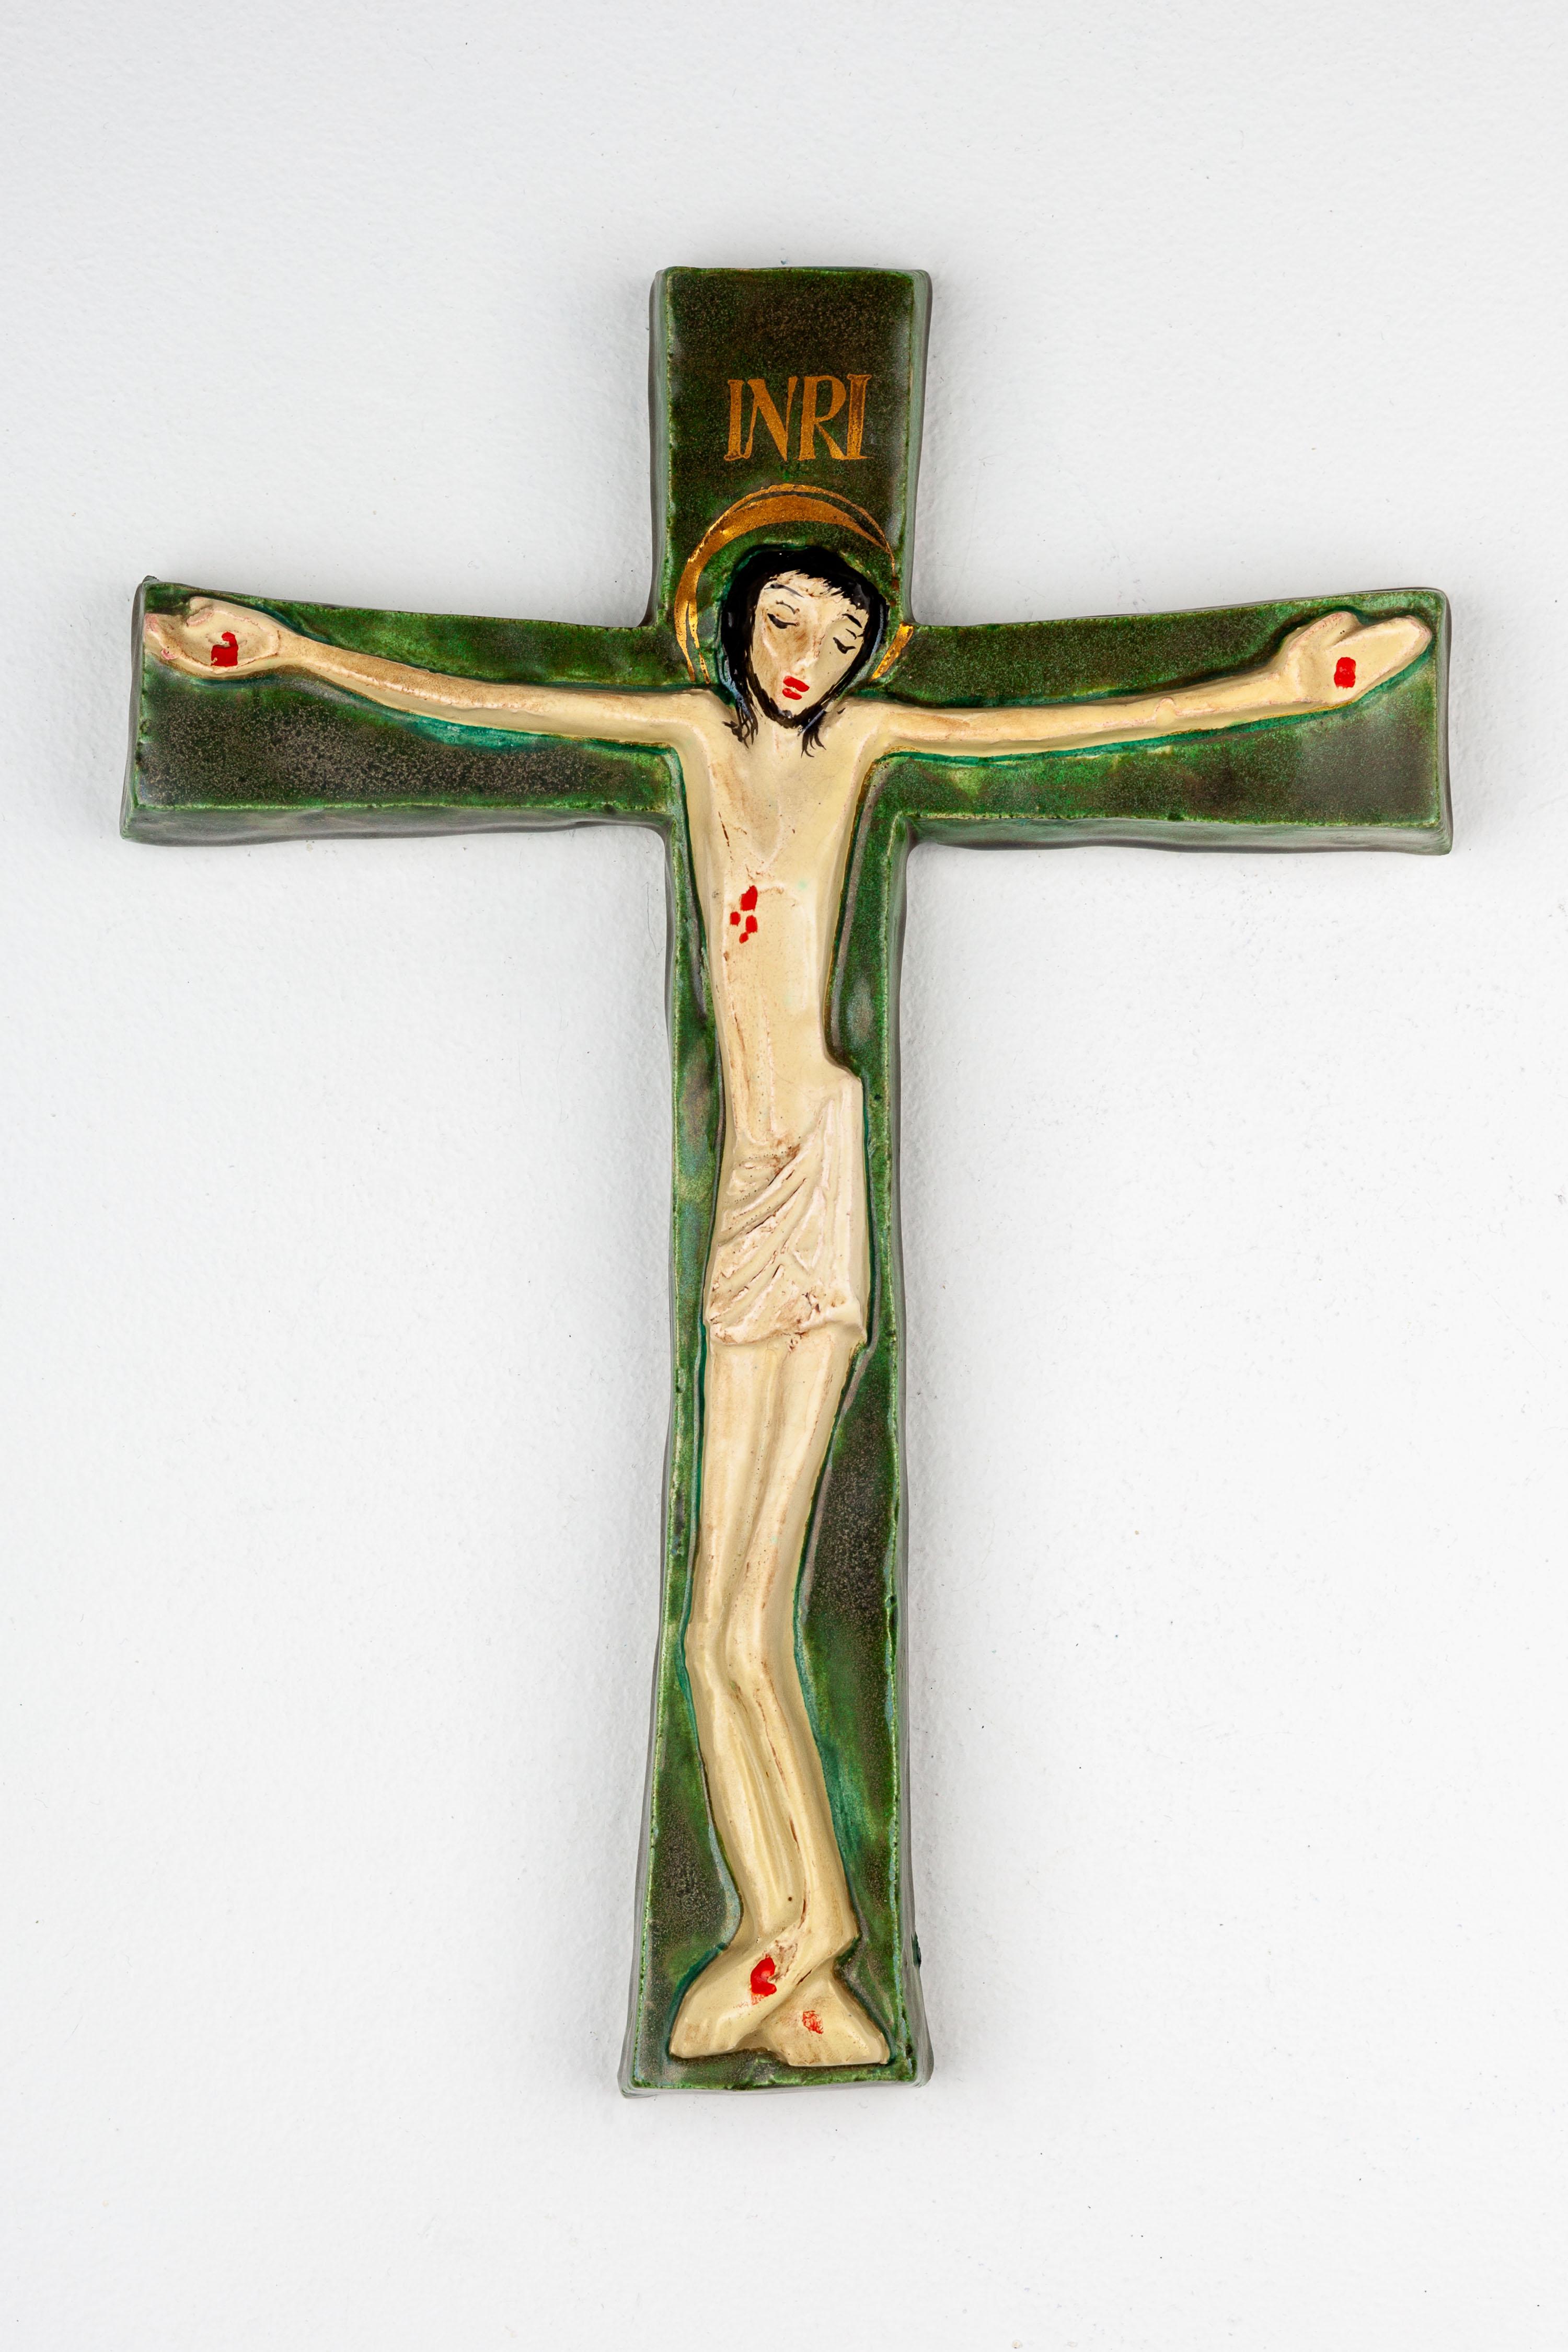 Dieses keramische Kruzifix ist ein charakteristisches Artefakt der europäischen Studiotöpferei aus der Mitte des Jahrhunderts, das die einzigartige Verbindung traditioneller religiöser Motive mit moderner künstlerischer Sensibilität unterstreicht.